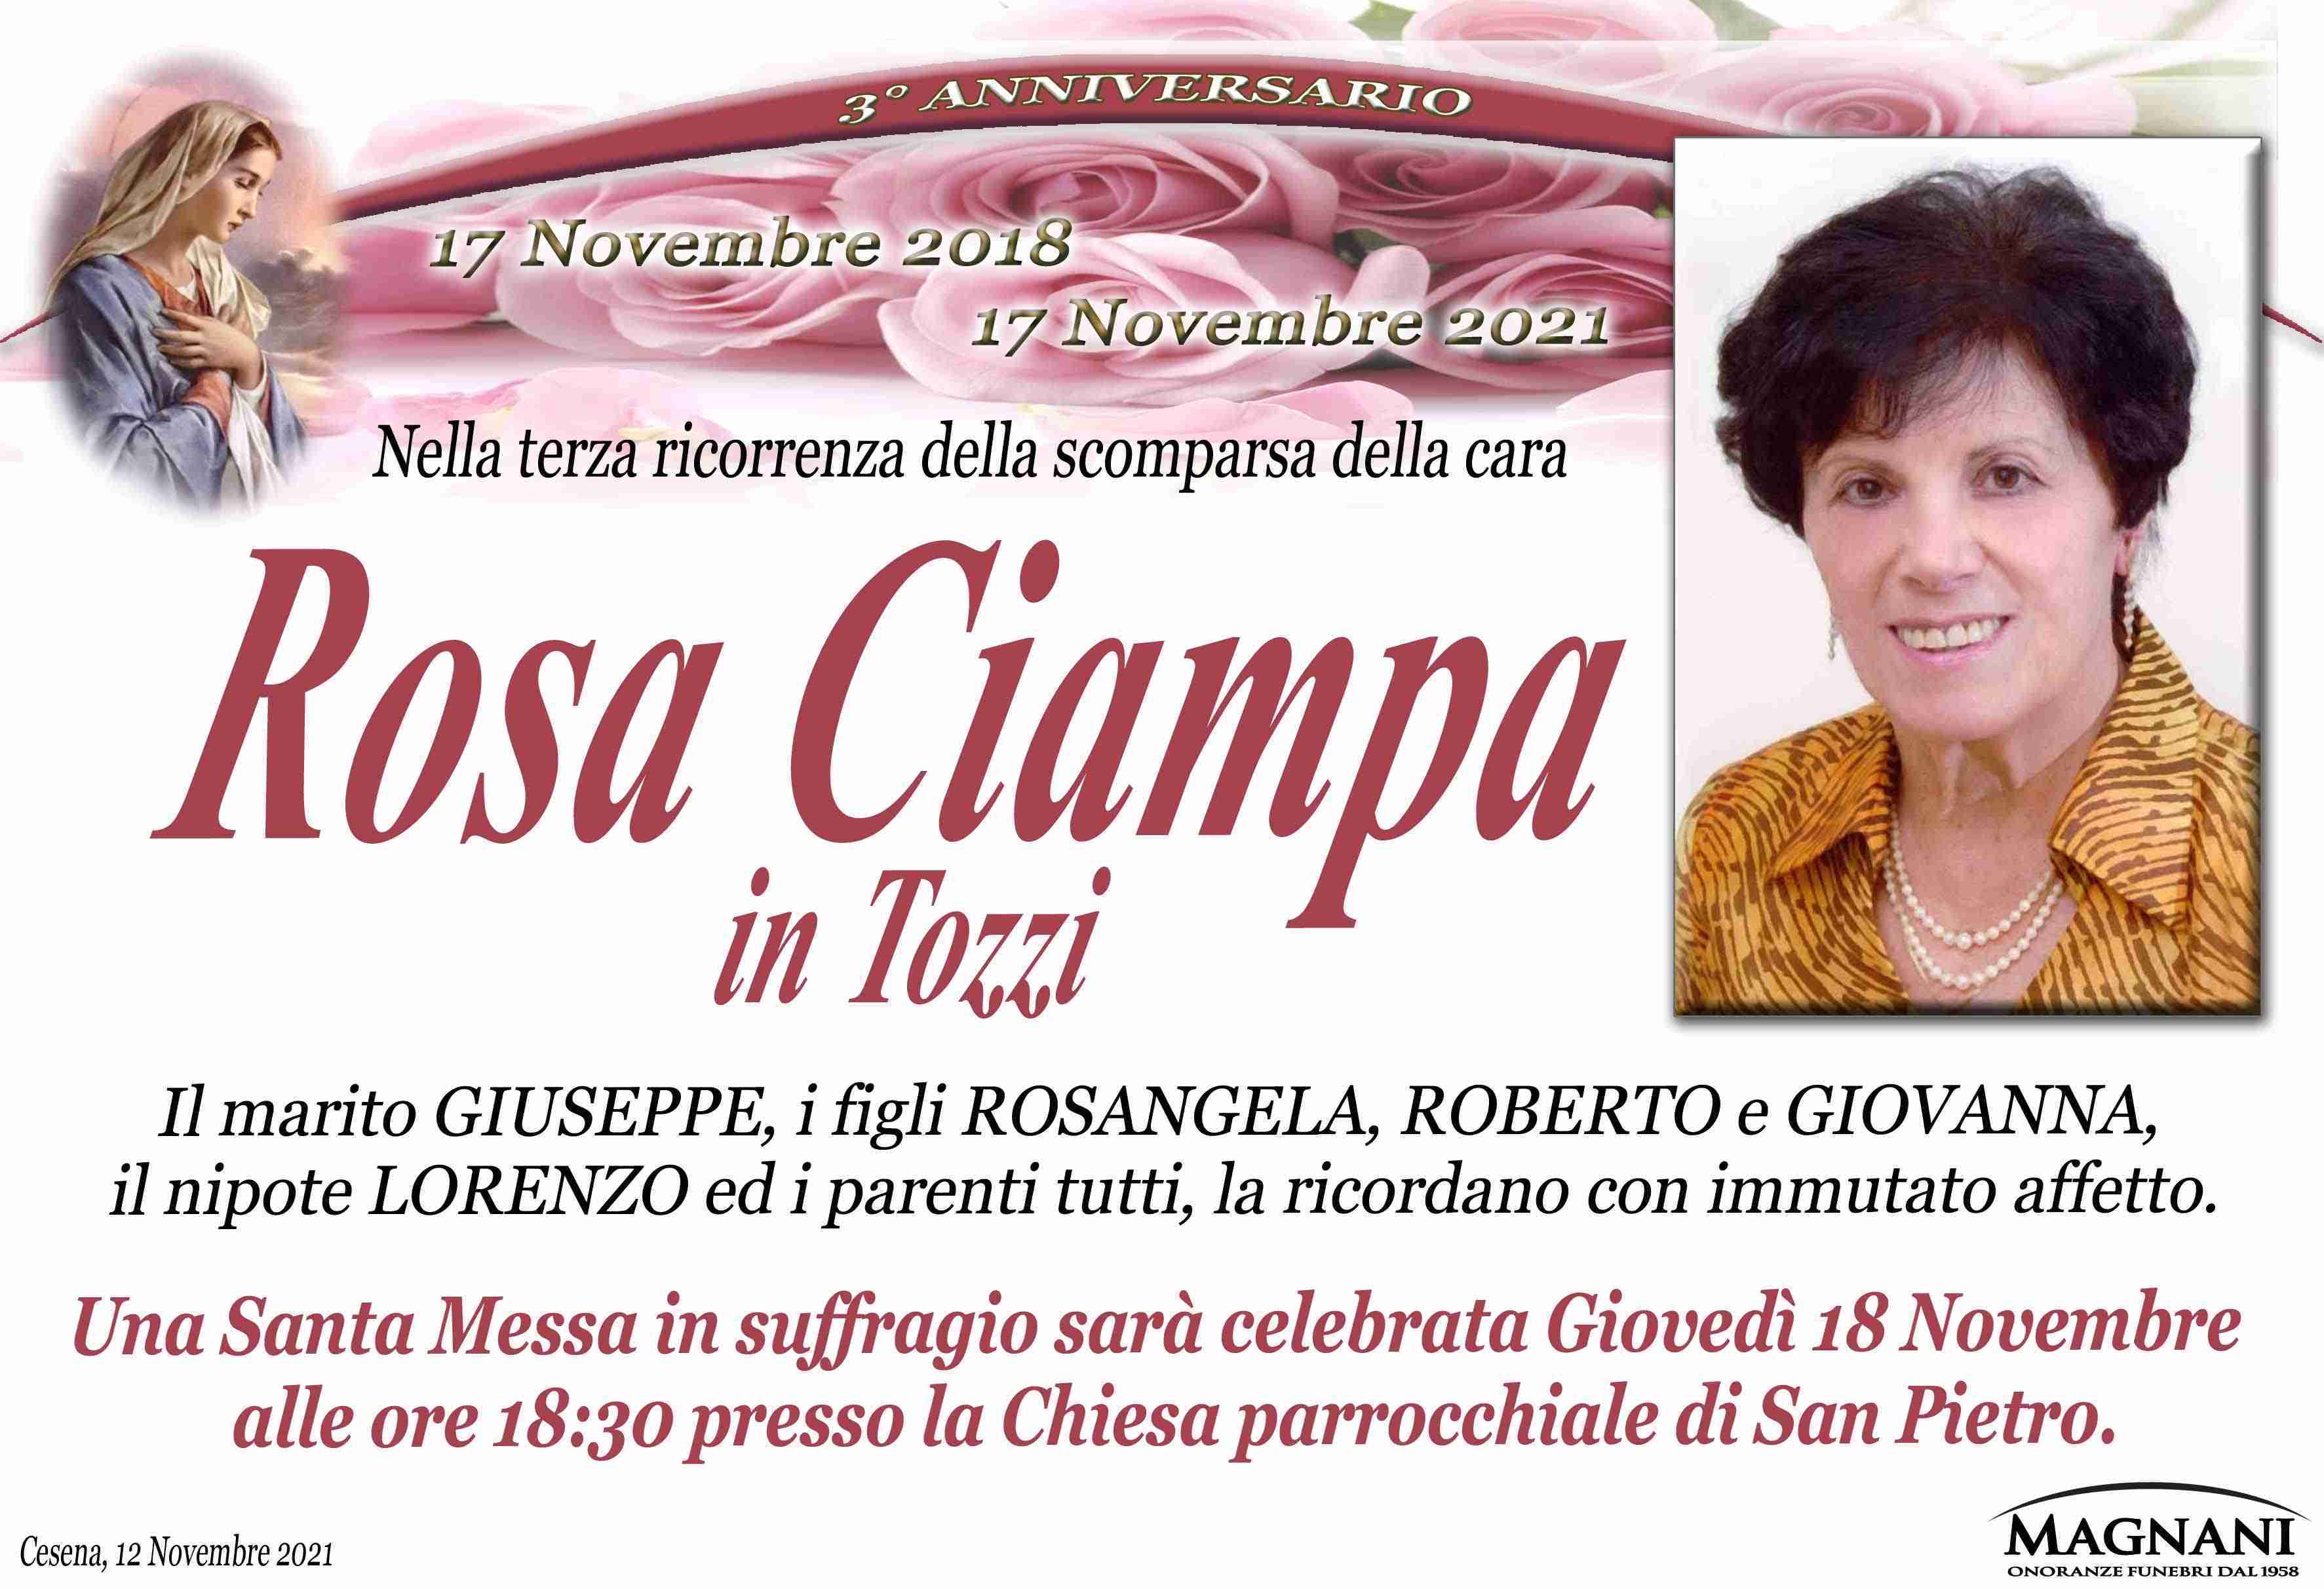 Rosa Ciampa